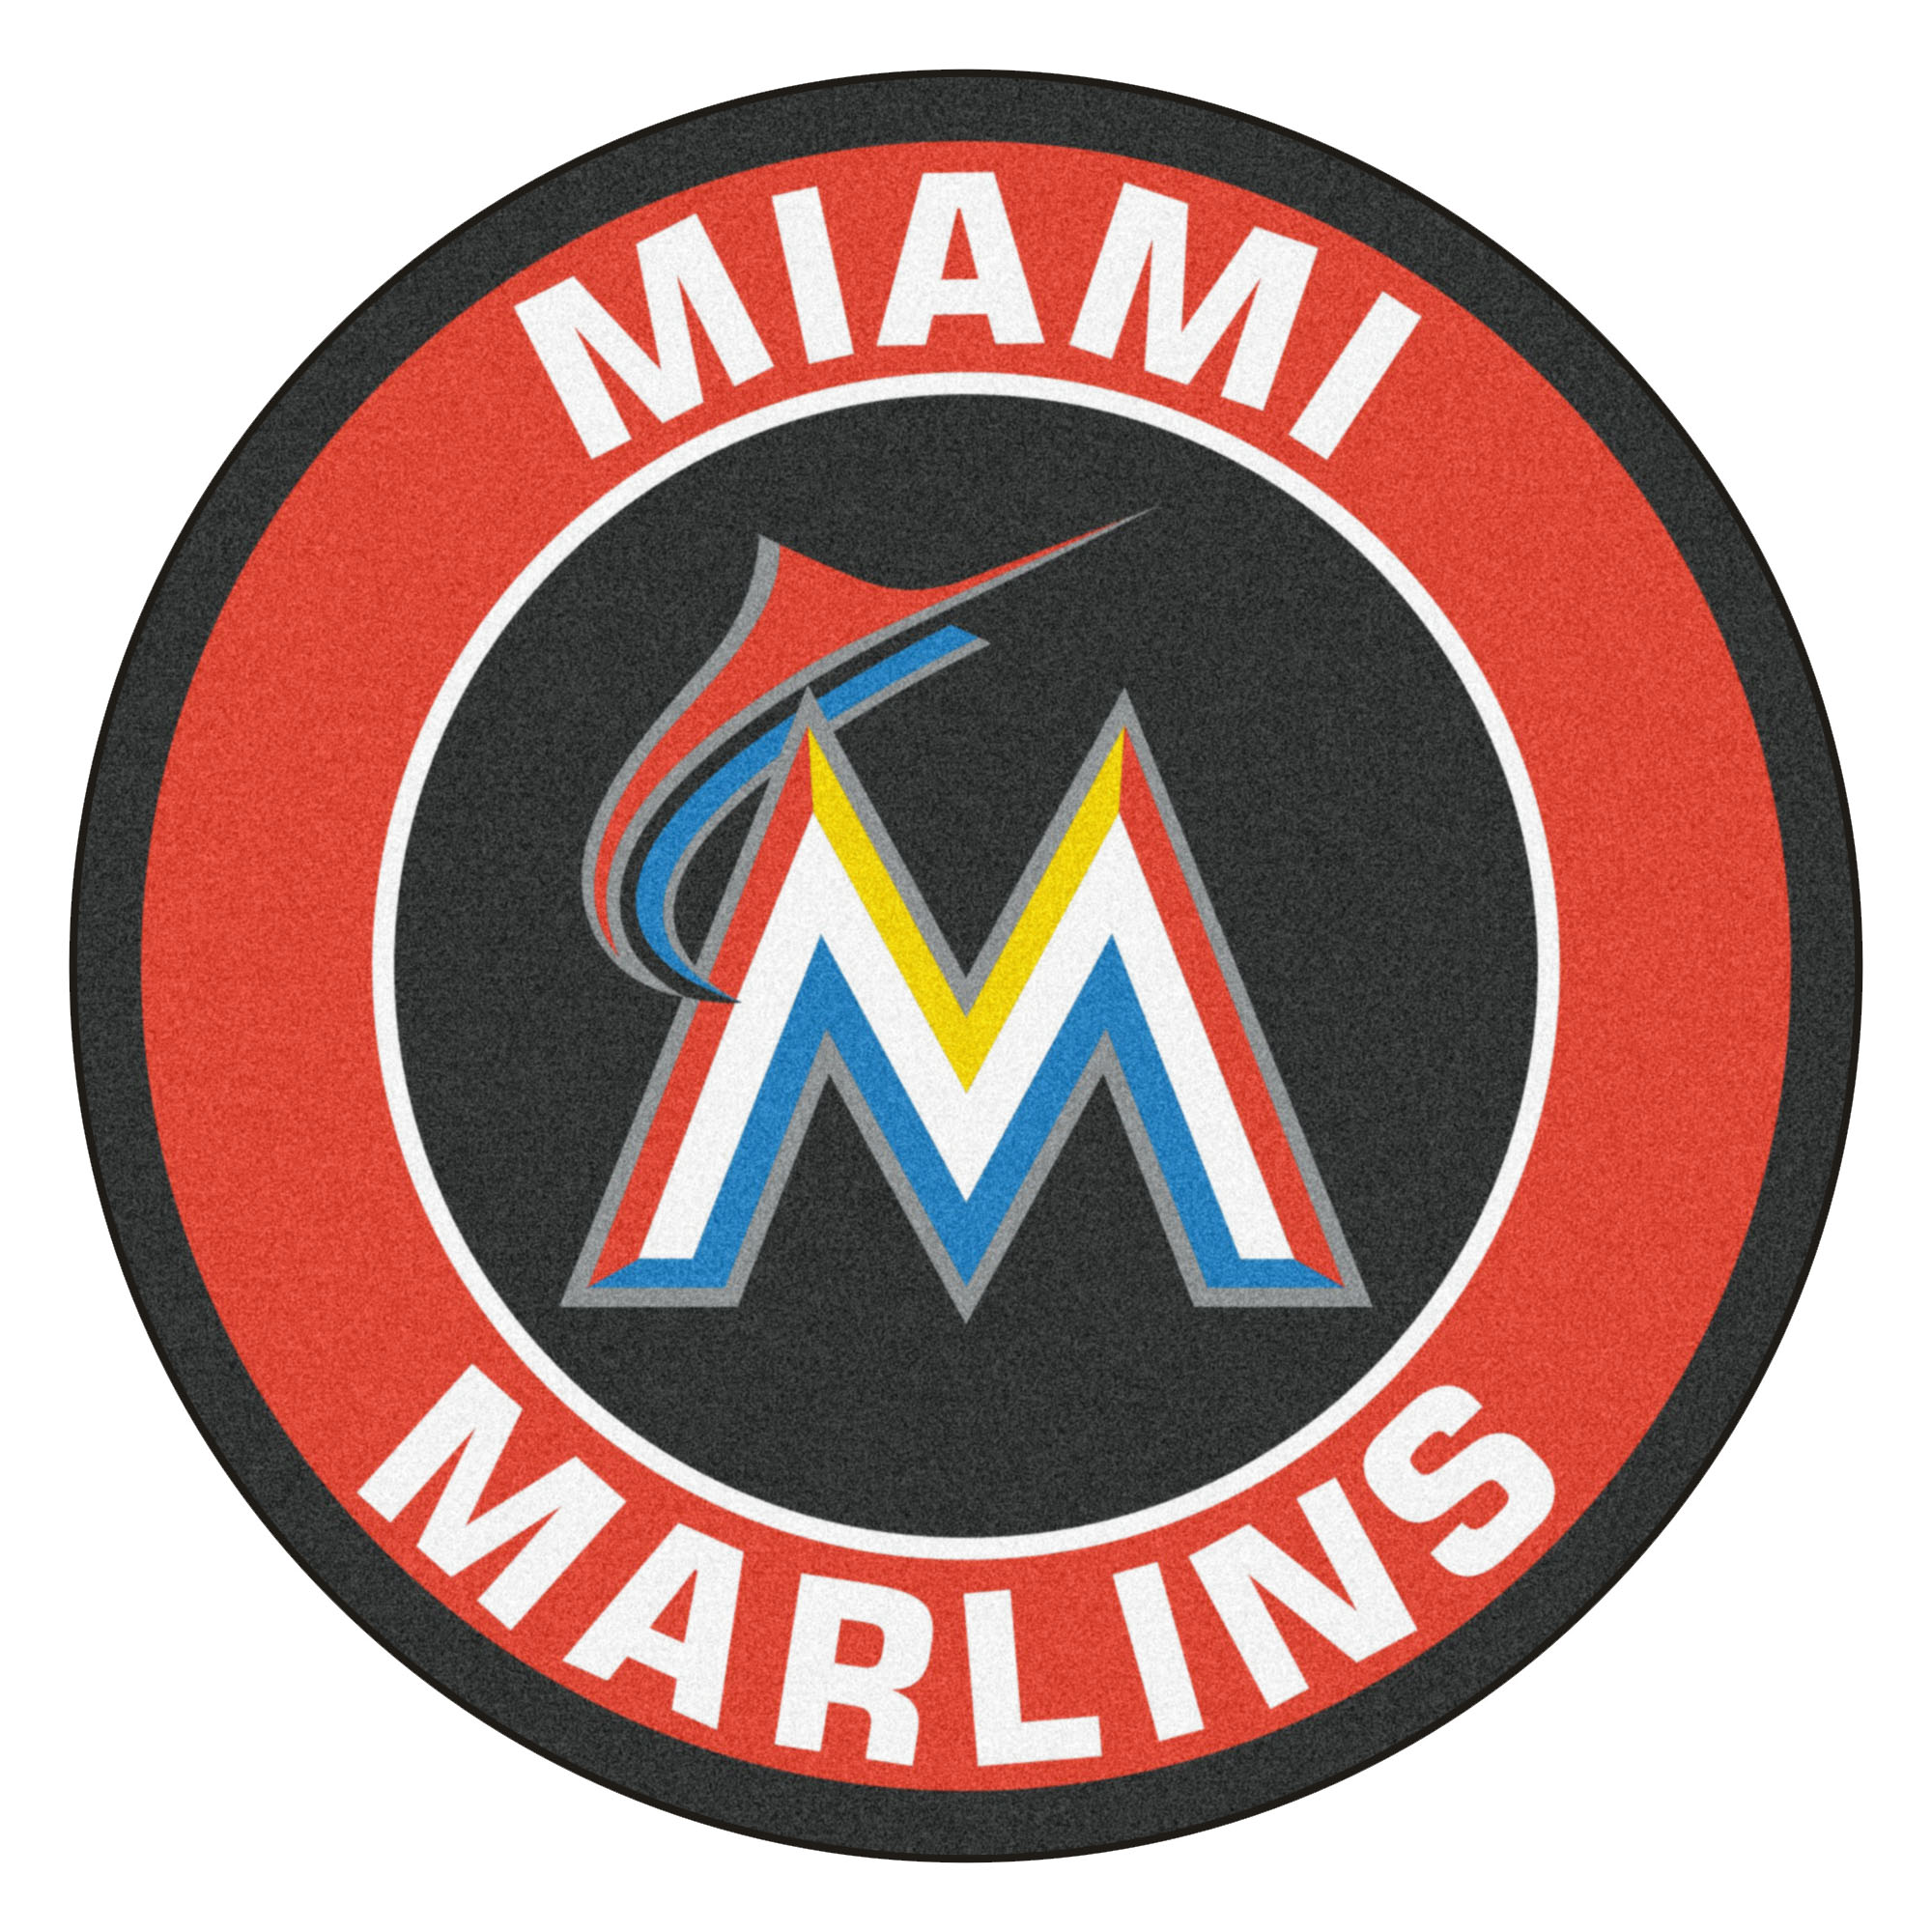 Miami Marlins Tickets